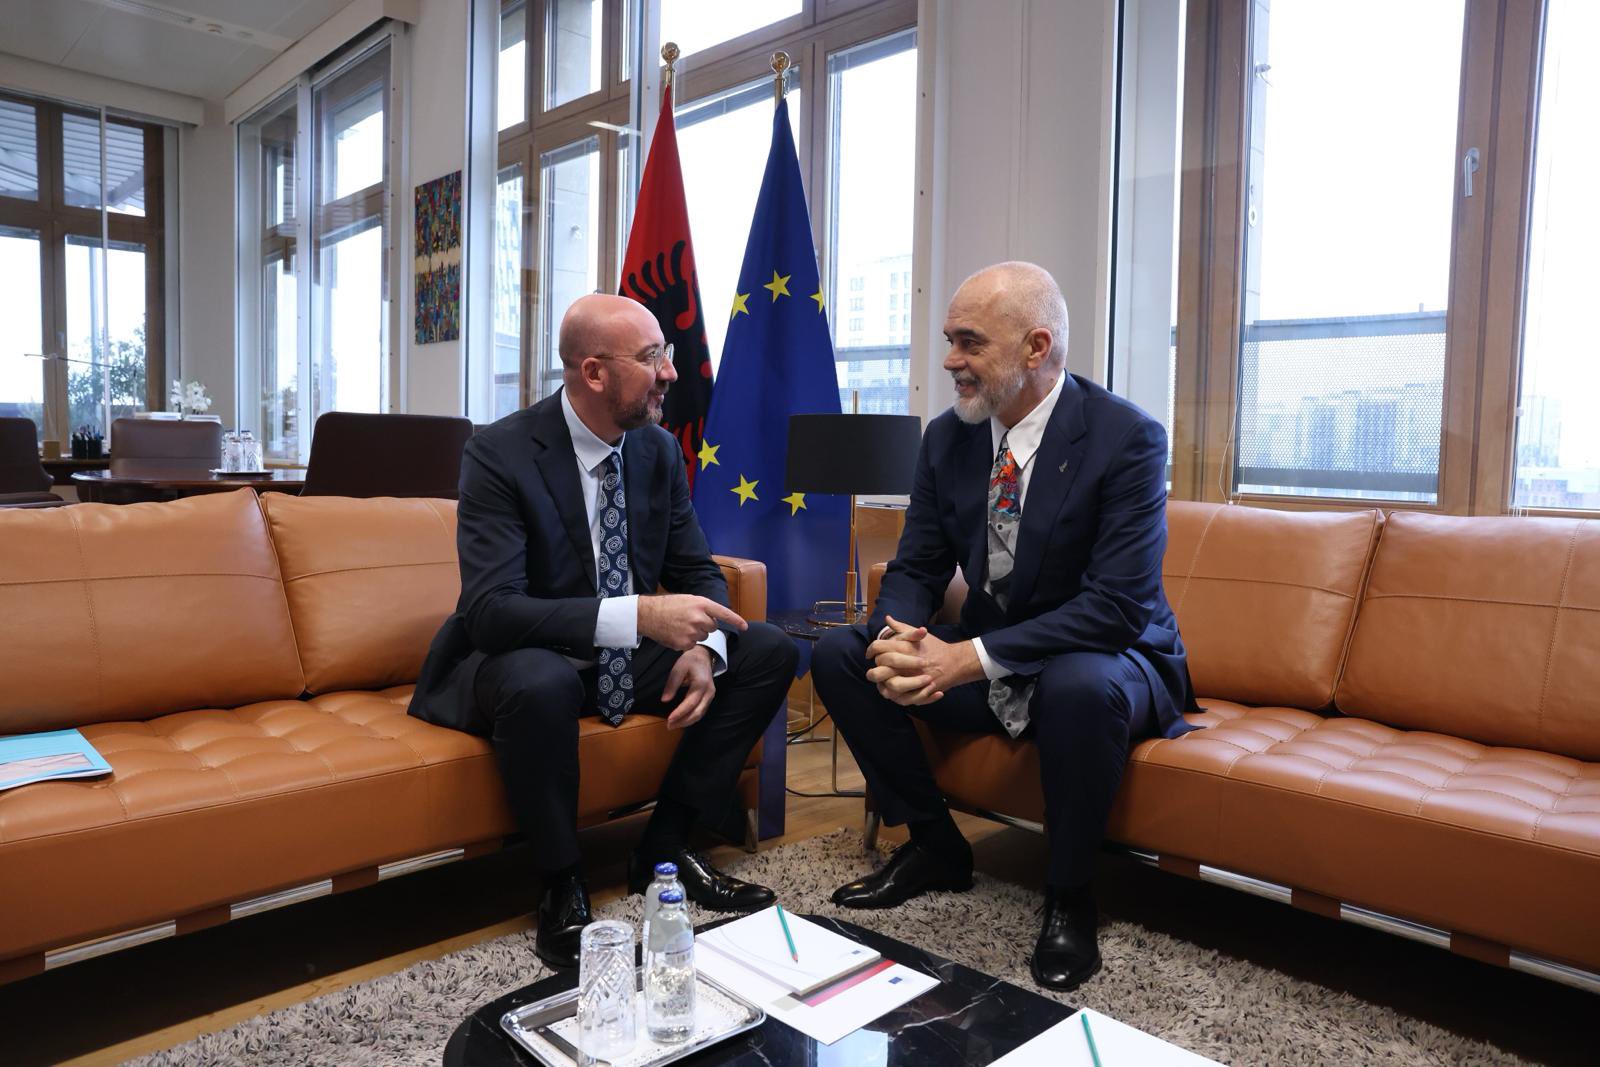 presidenti i kie charls michel pret kryeministrin rama dhe zbulon temat e diskutimit mbeshtesim shqiperine ne rrugen e integrimit